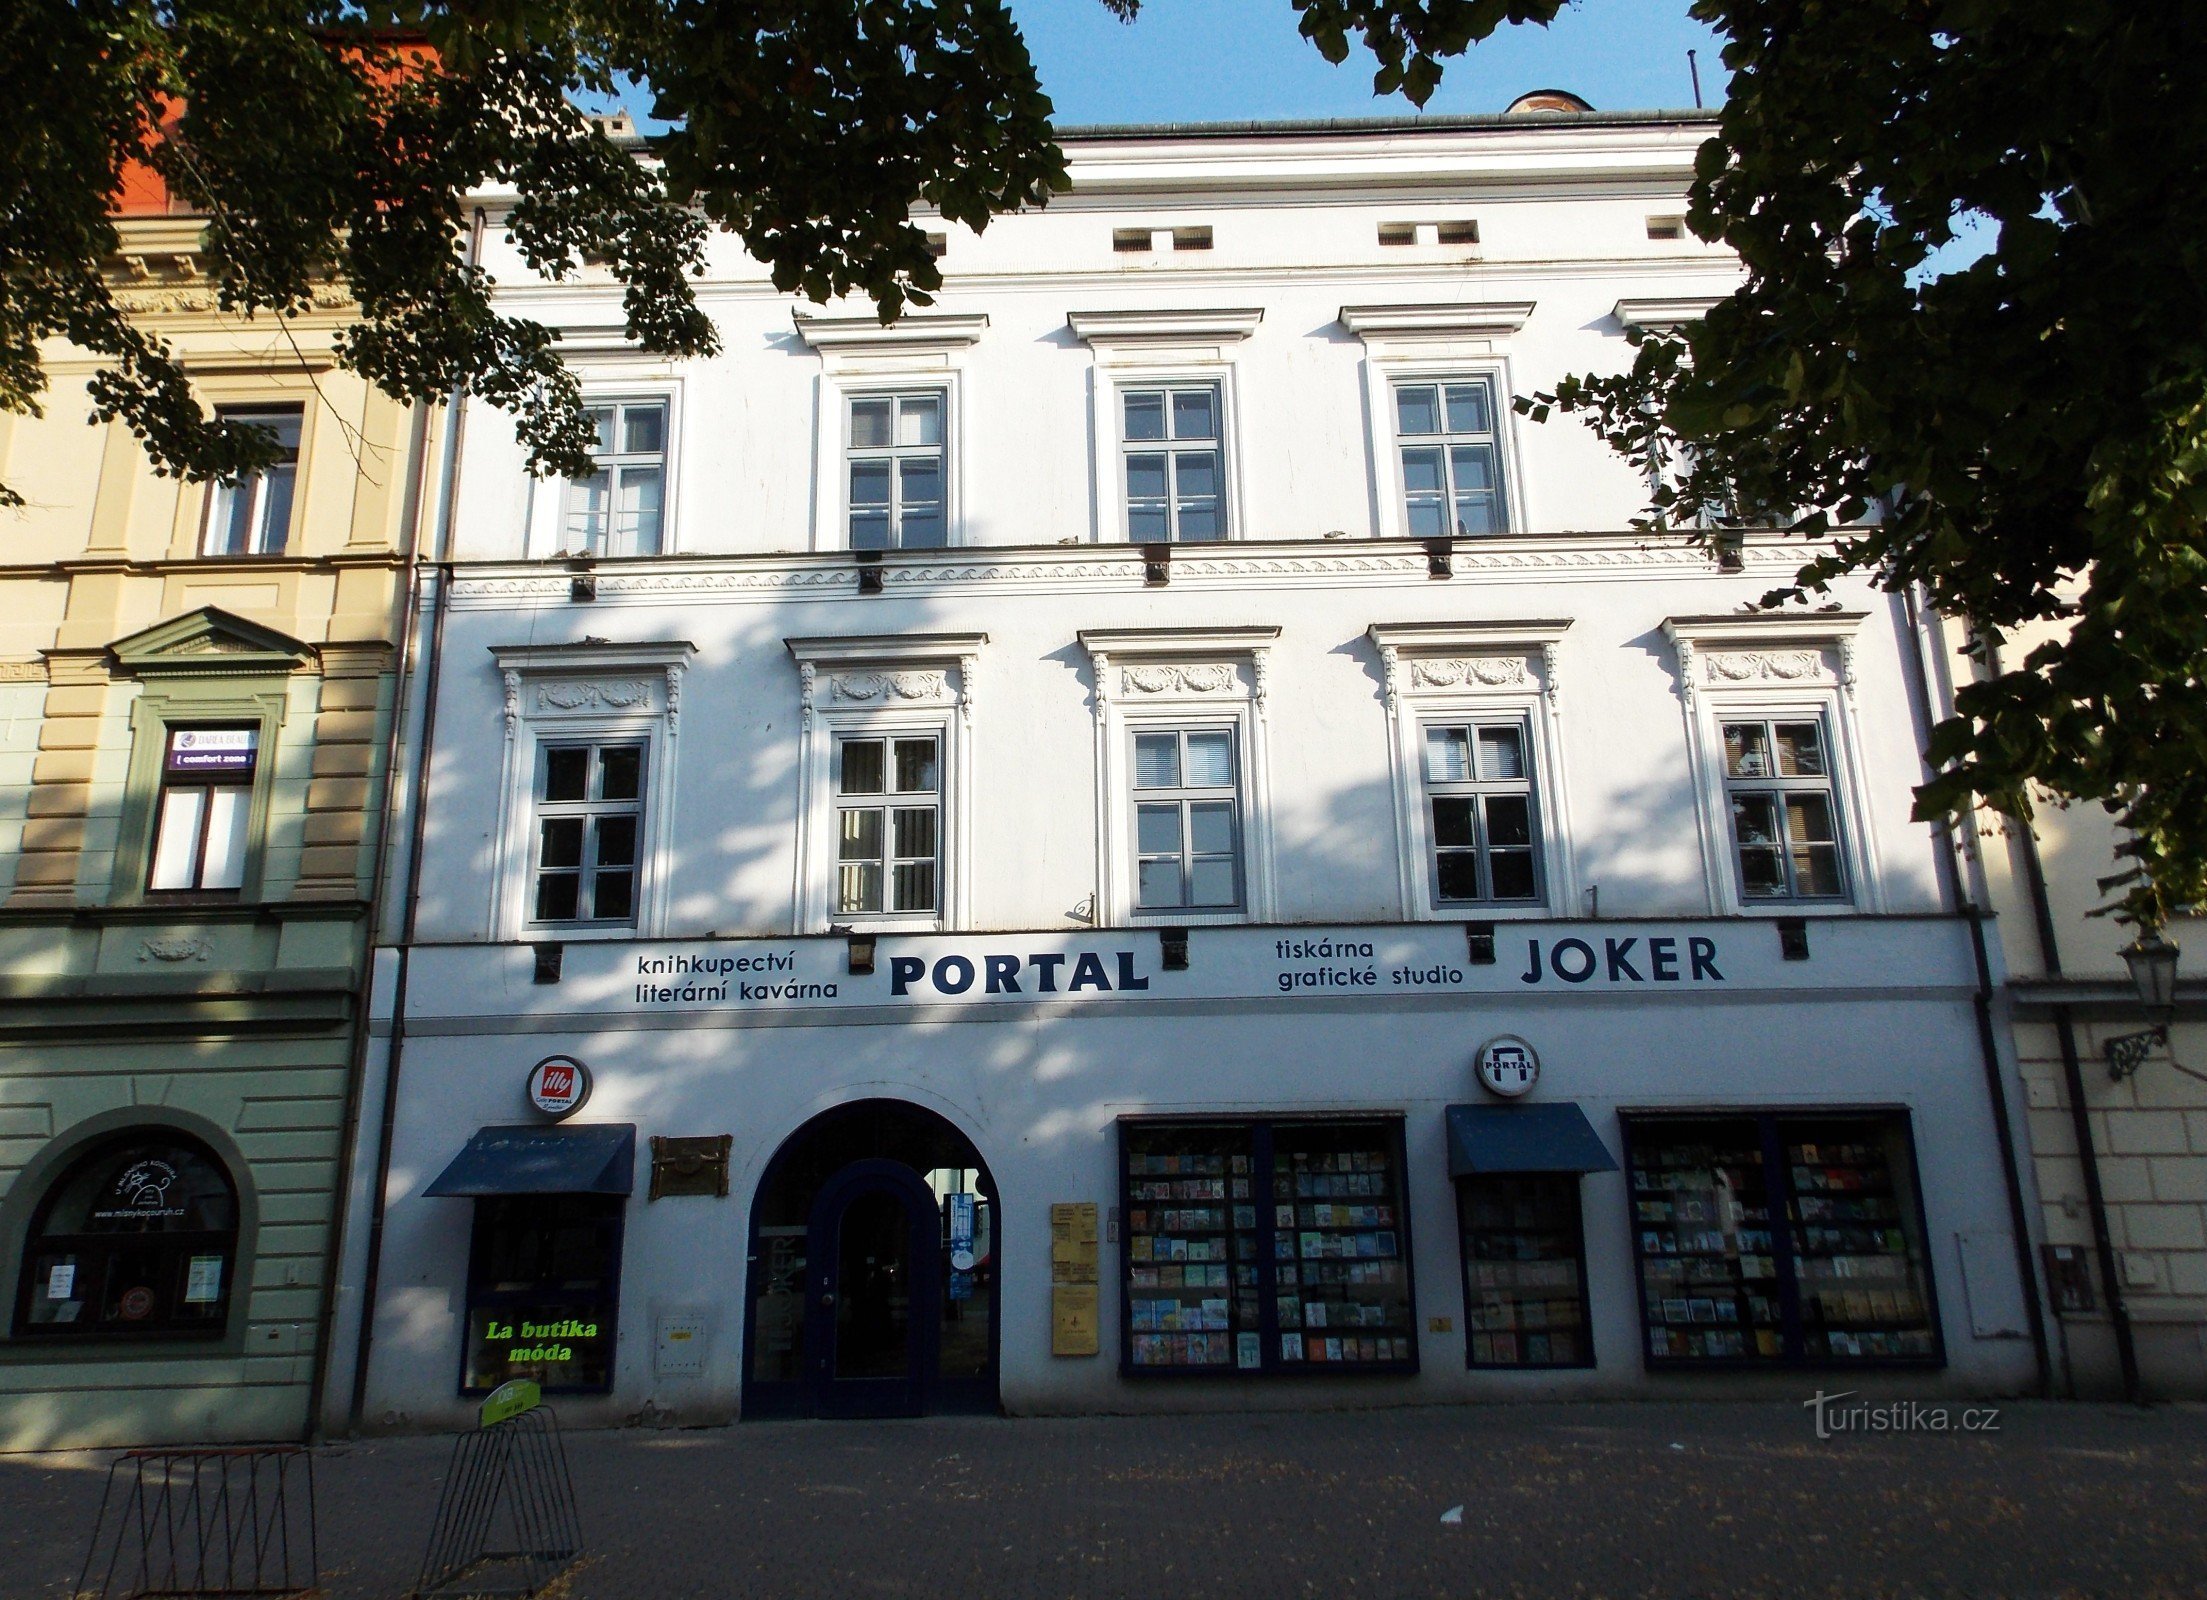 Portal Book House - Uherské Hradiště